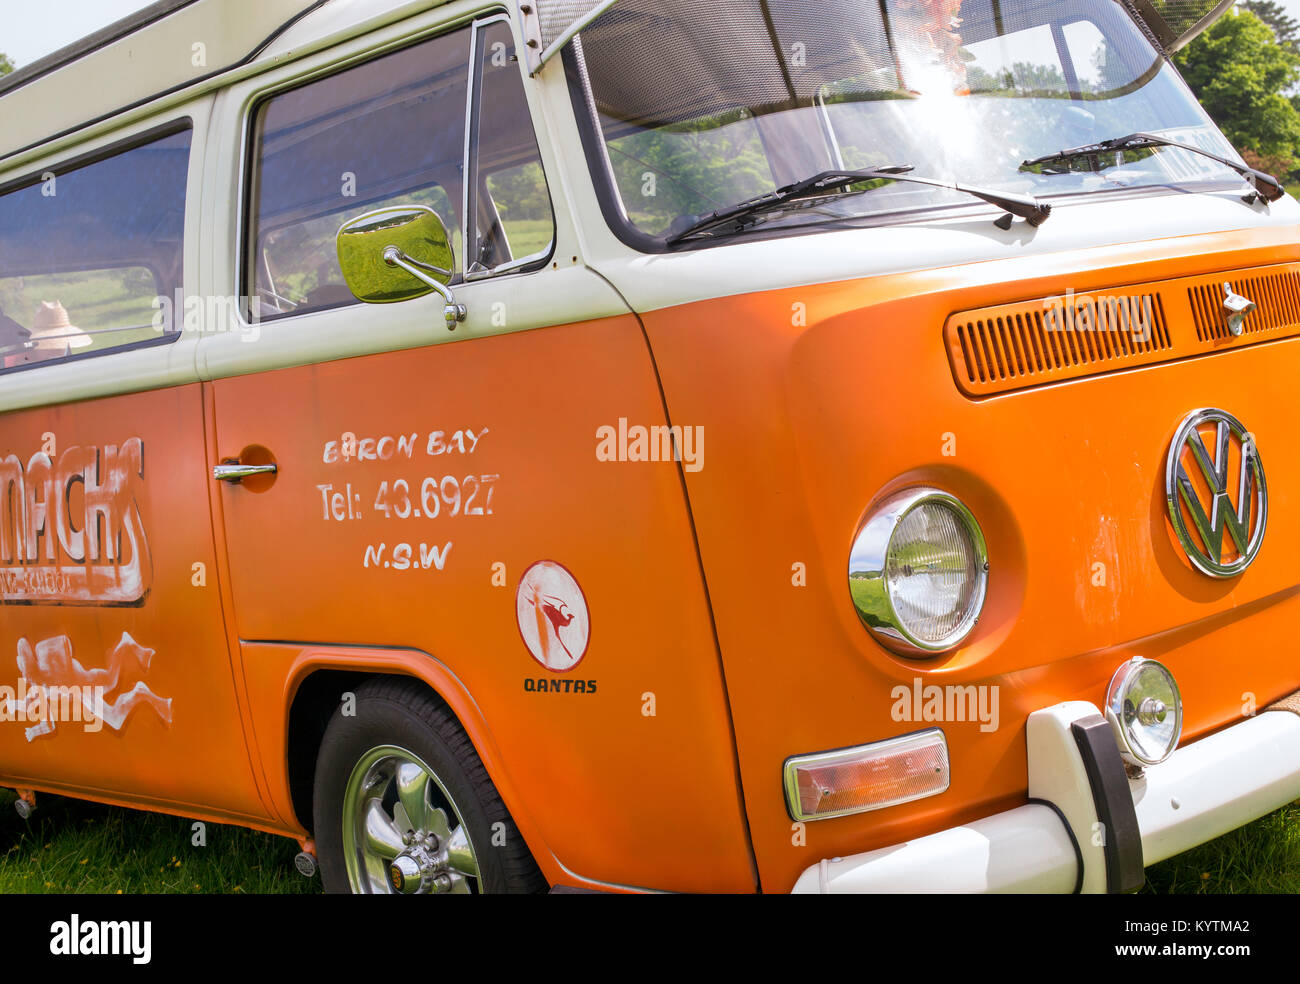 1970s Orange VW Volkswagen camper van. UK Stock Photo